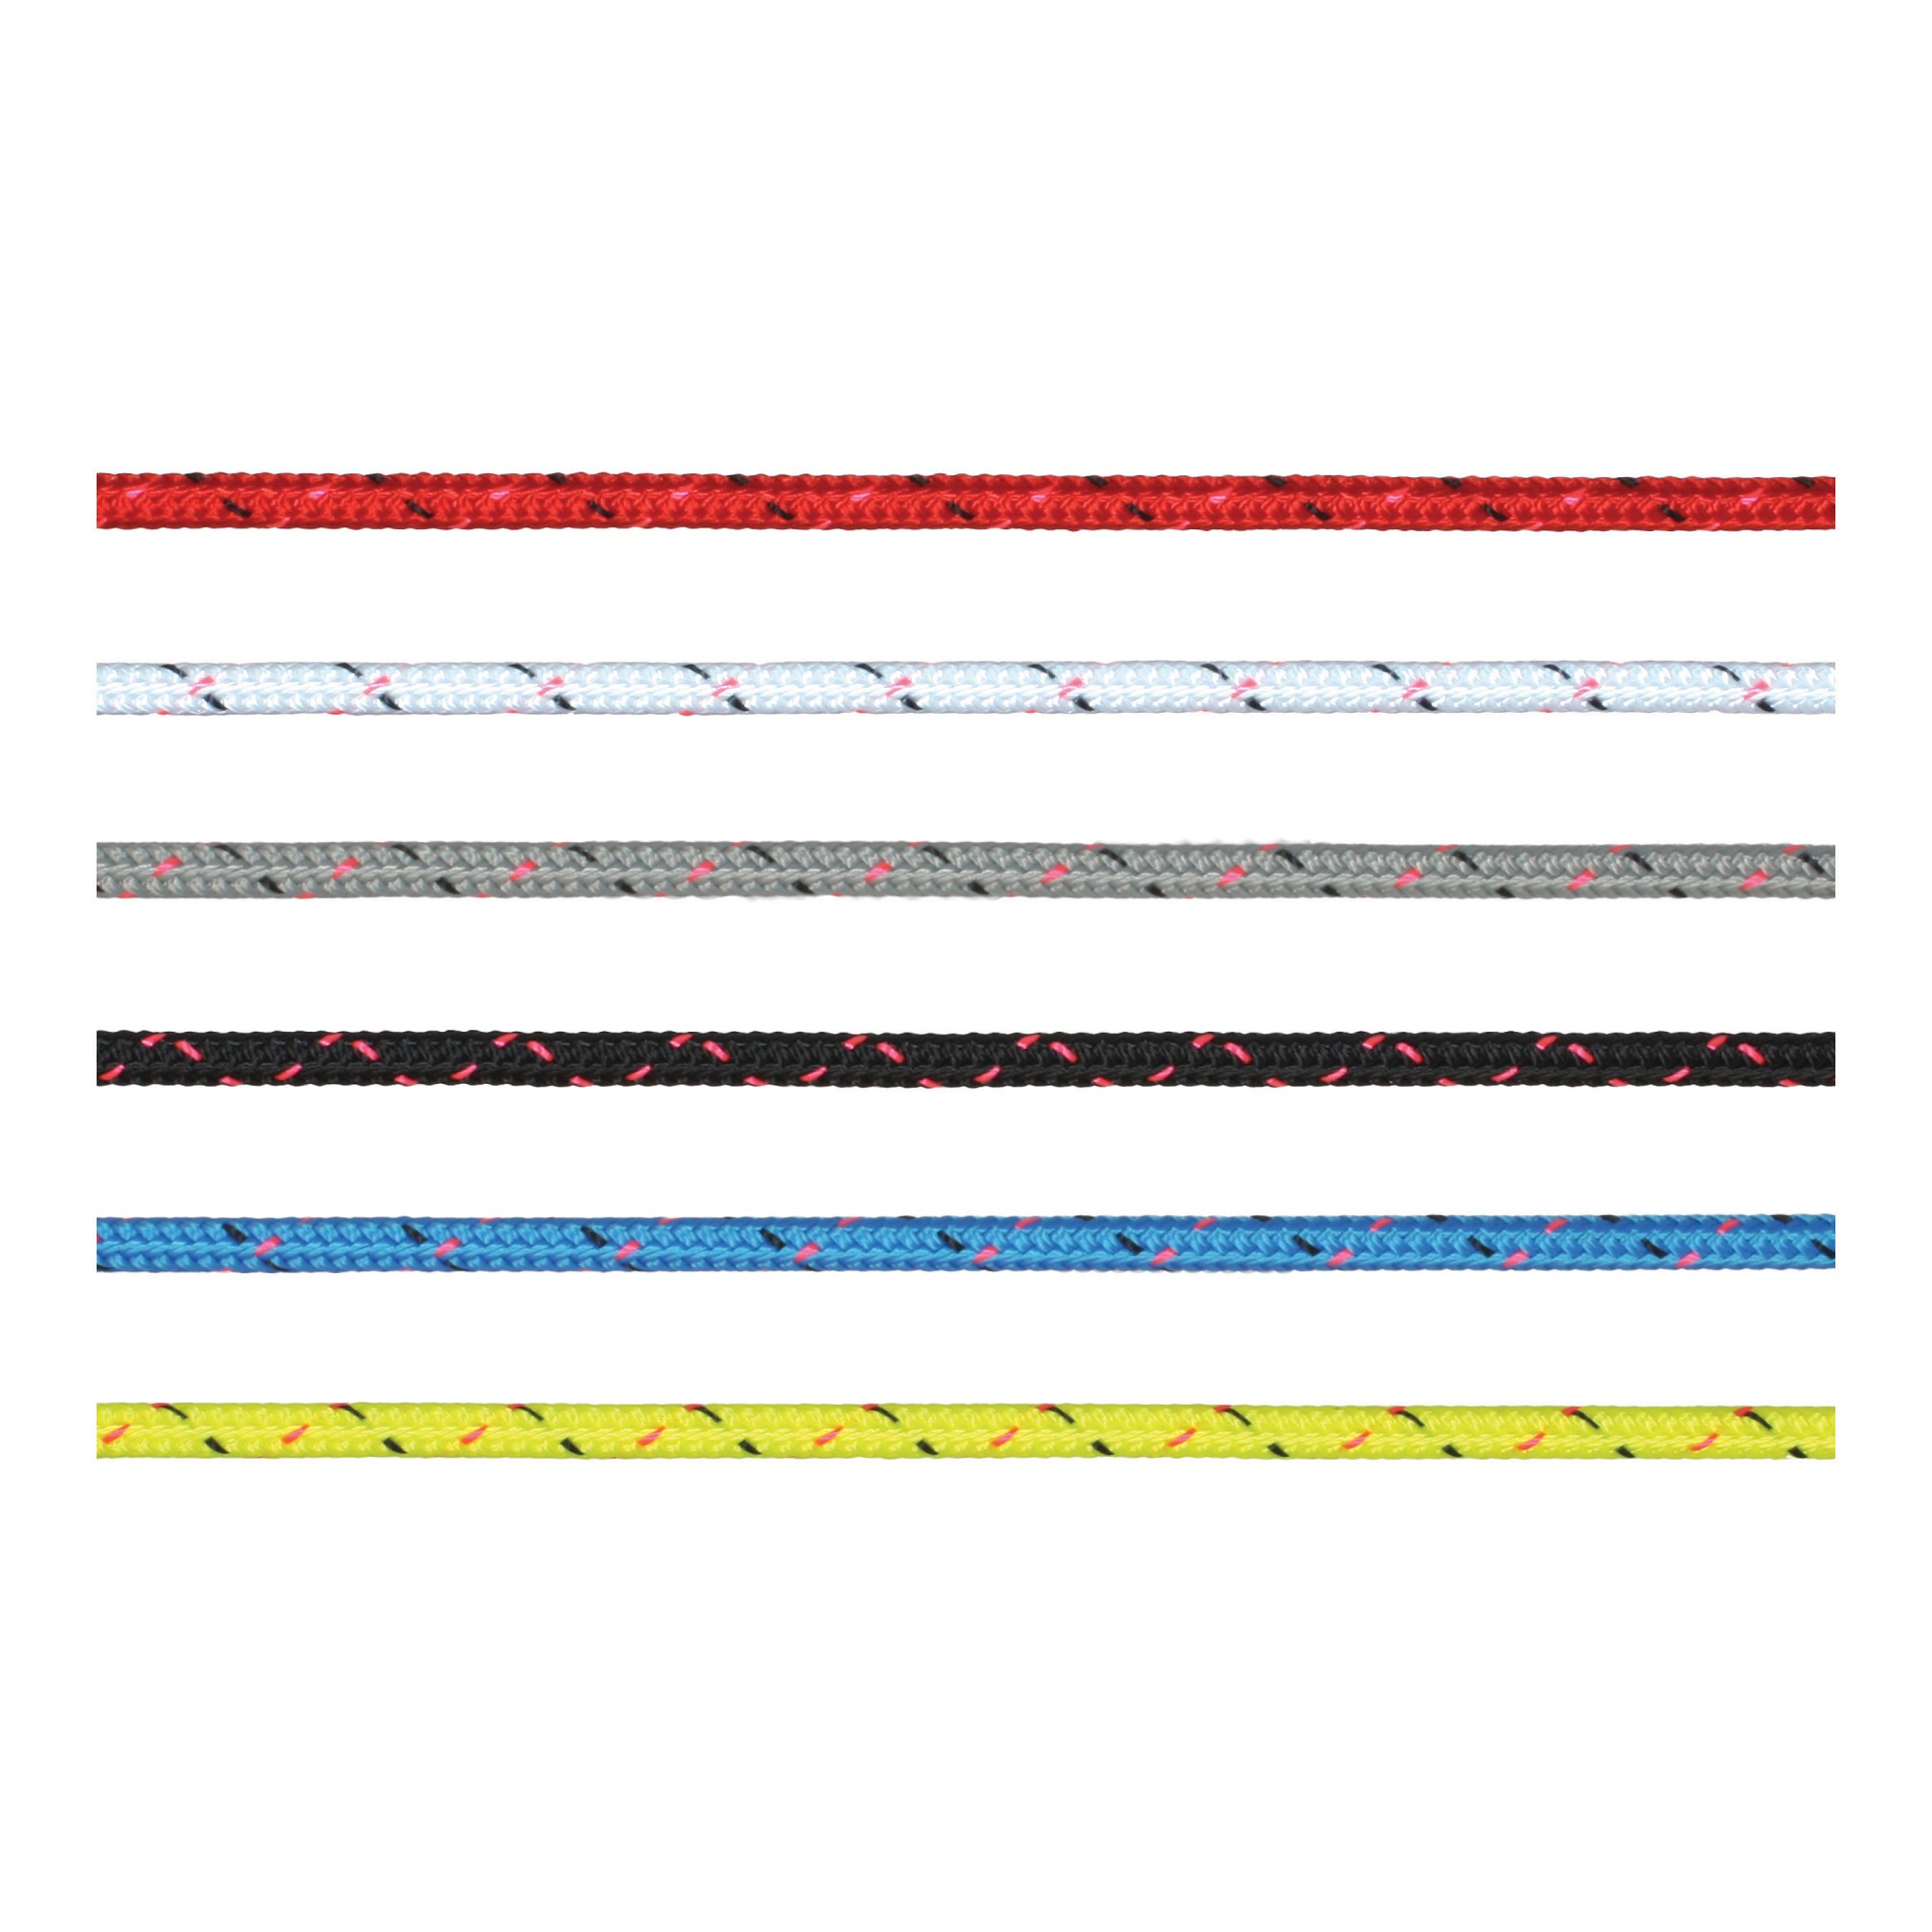 Трос Marlow Excel Pro из полиэстера фиолетового цвета 200 м диаметр 5 мм, Osculati 06.465.05VI